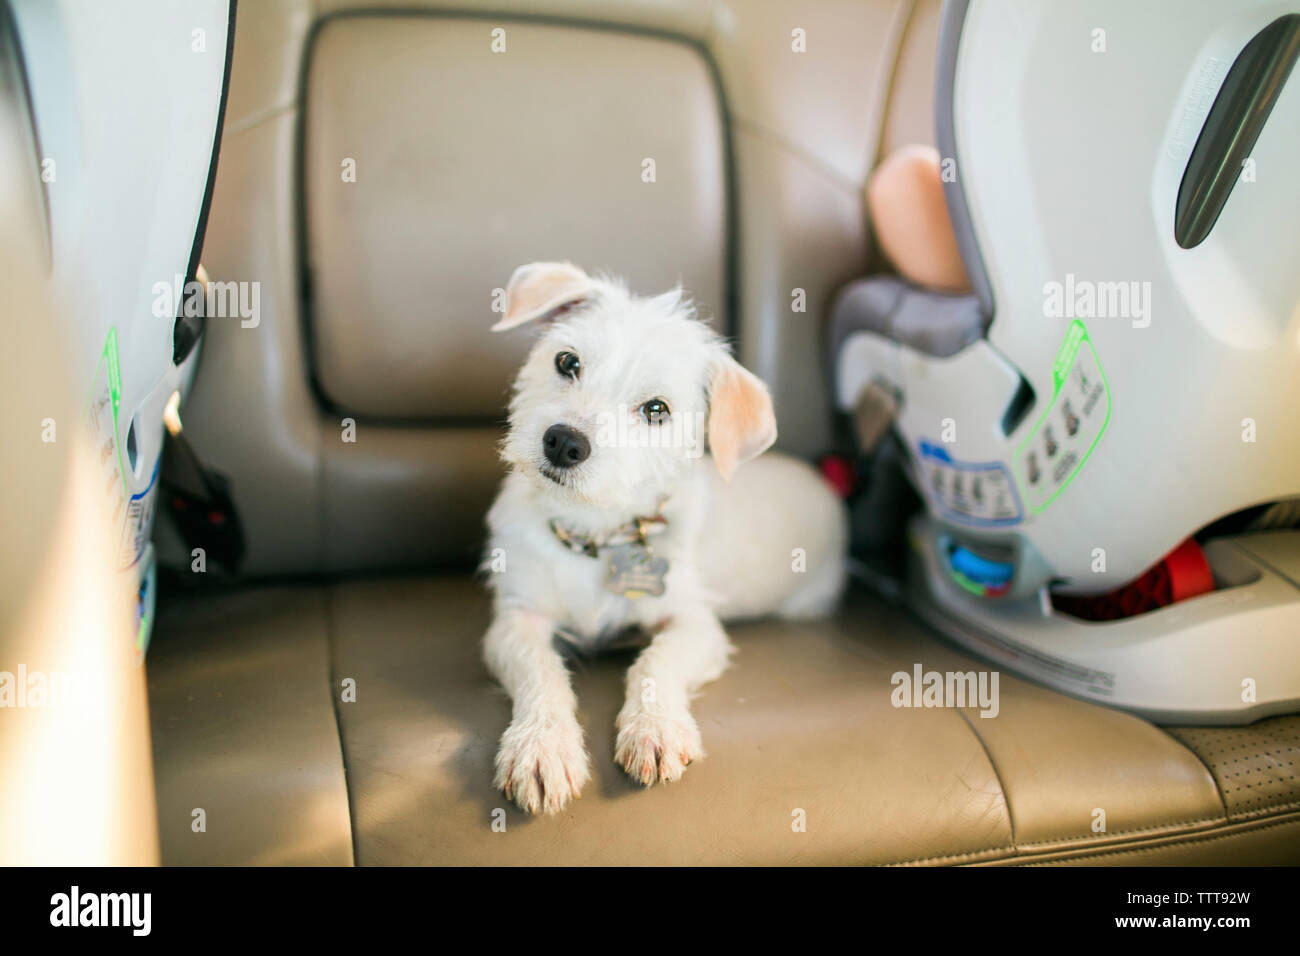 Retrato de perrito blanco sentado en el asiento del vehículo en alquiler Foto de stock